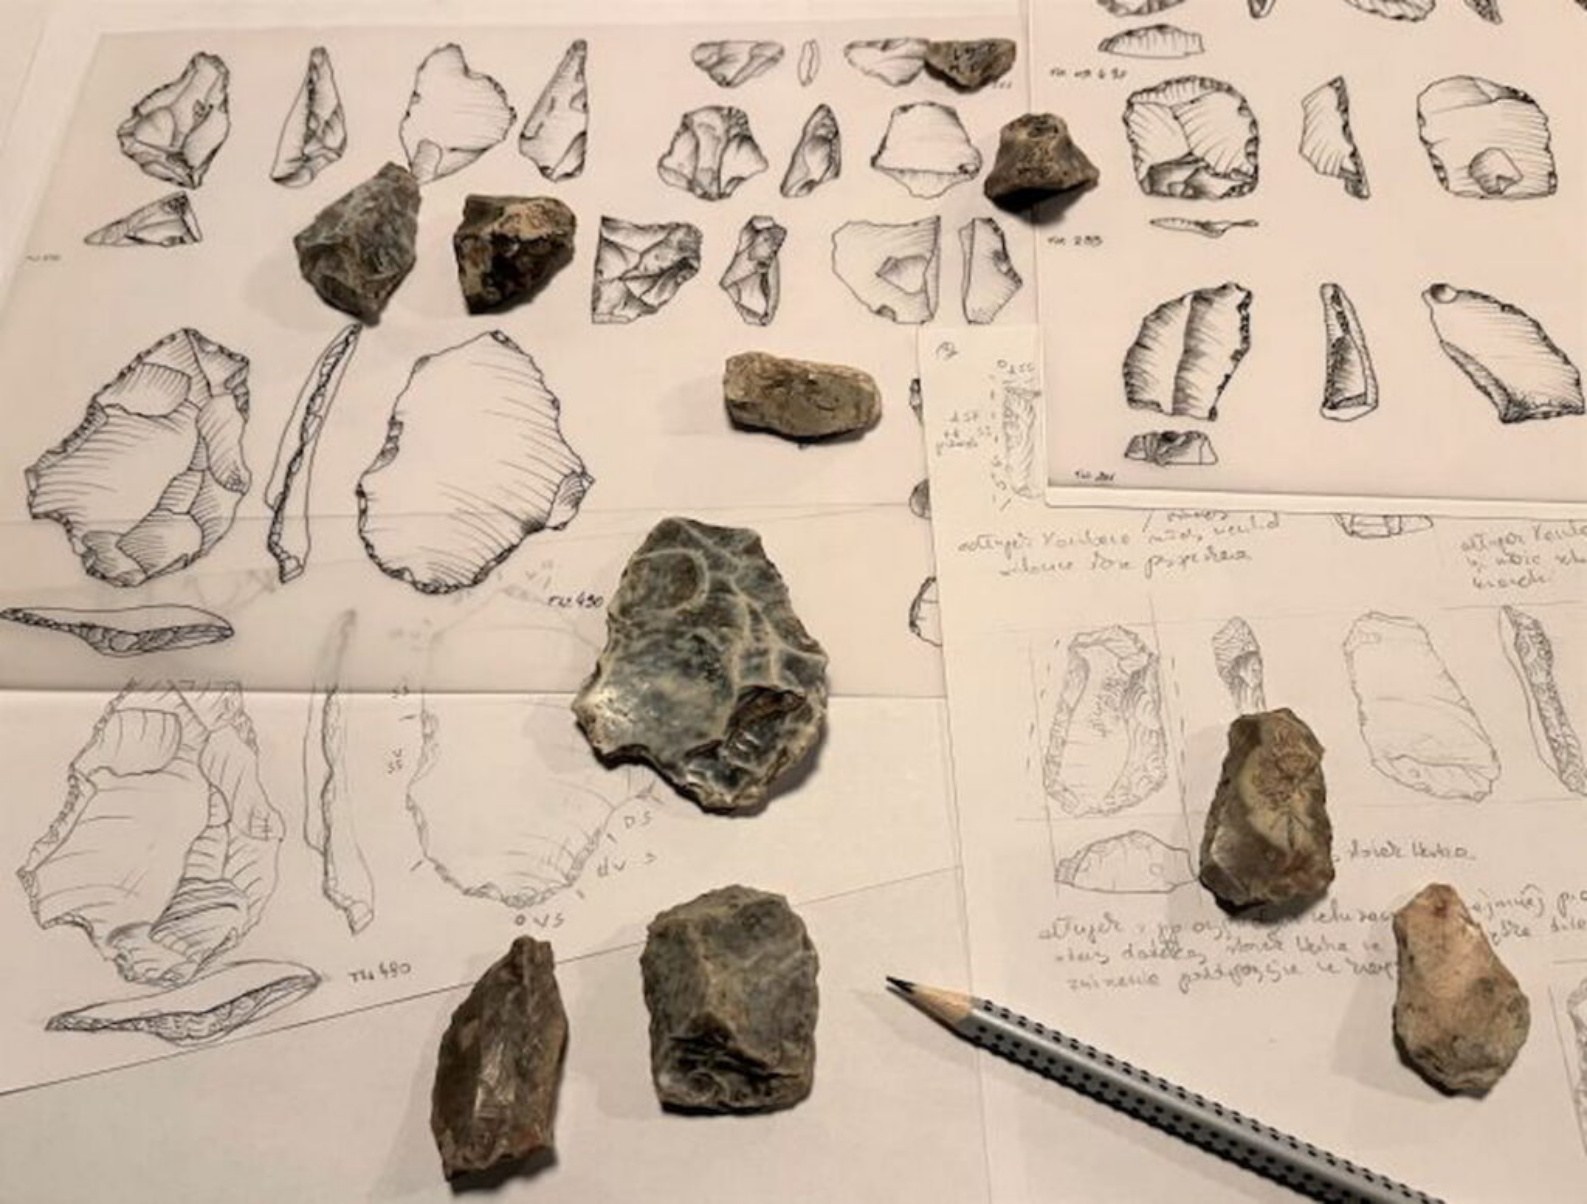 Artefactos de pedernal de la cueva Tunel Wielki, hechos hace medio millón de años posiblemente por Homo heildelbergensis.